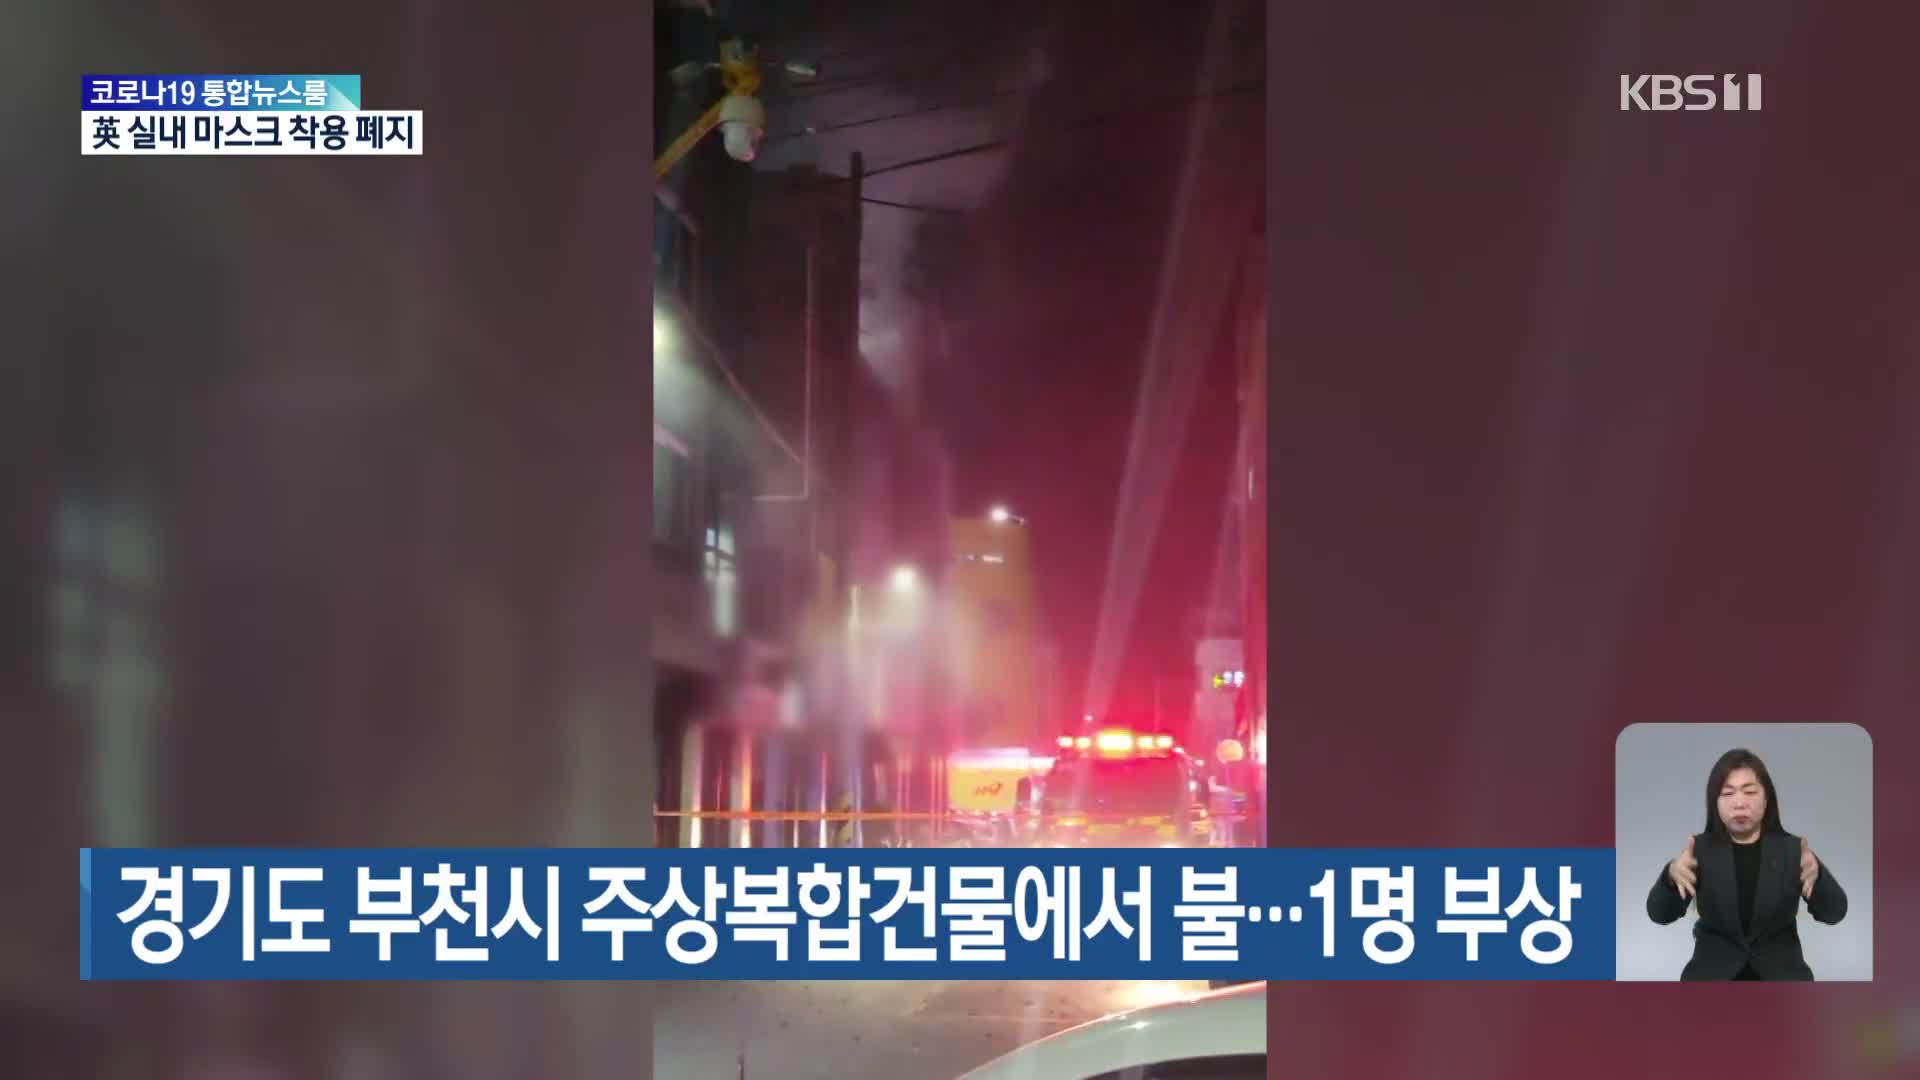 경기도 부천시 주상복합건물에서 불…1명 부상